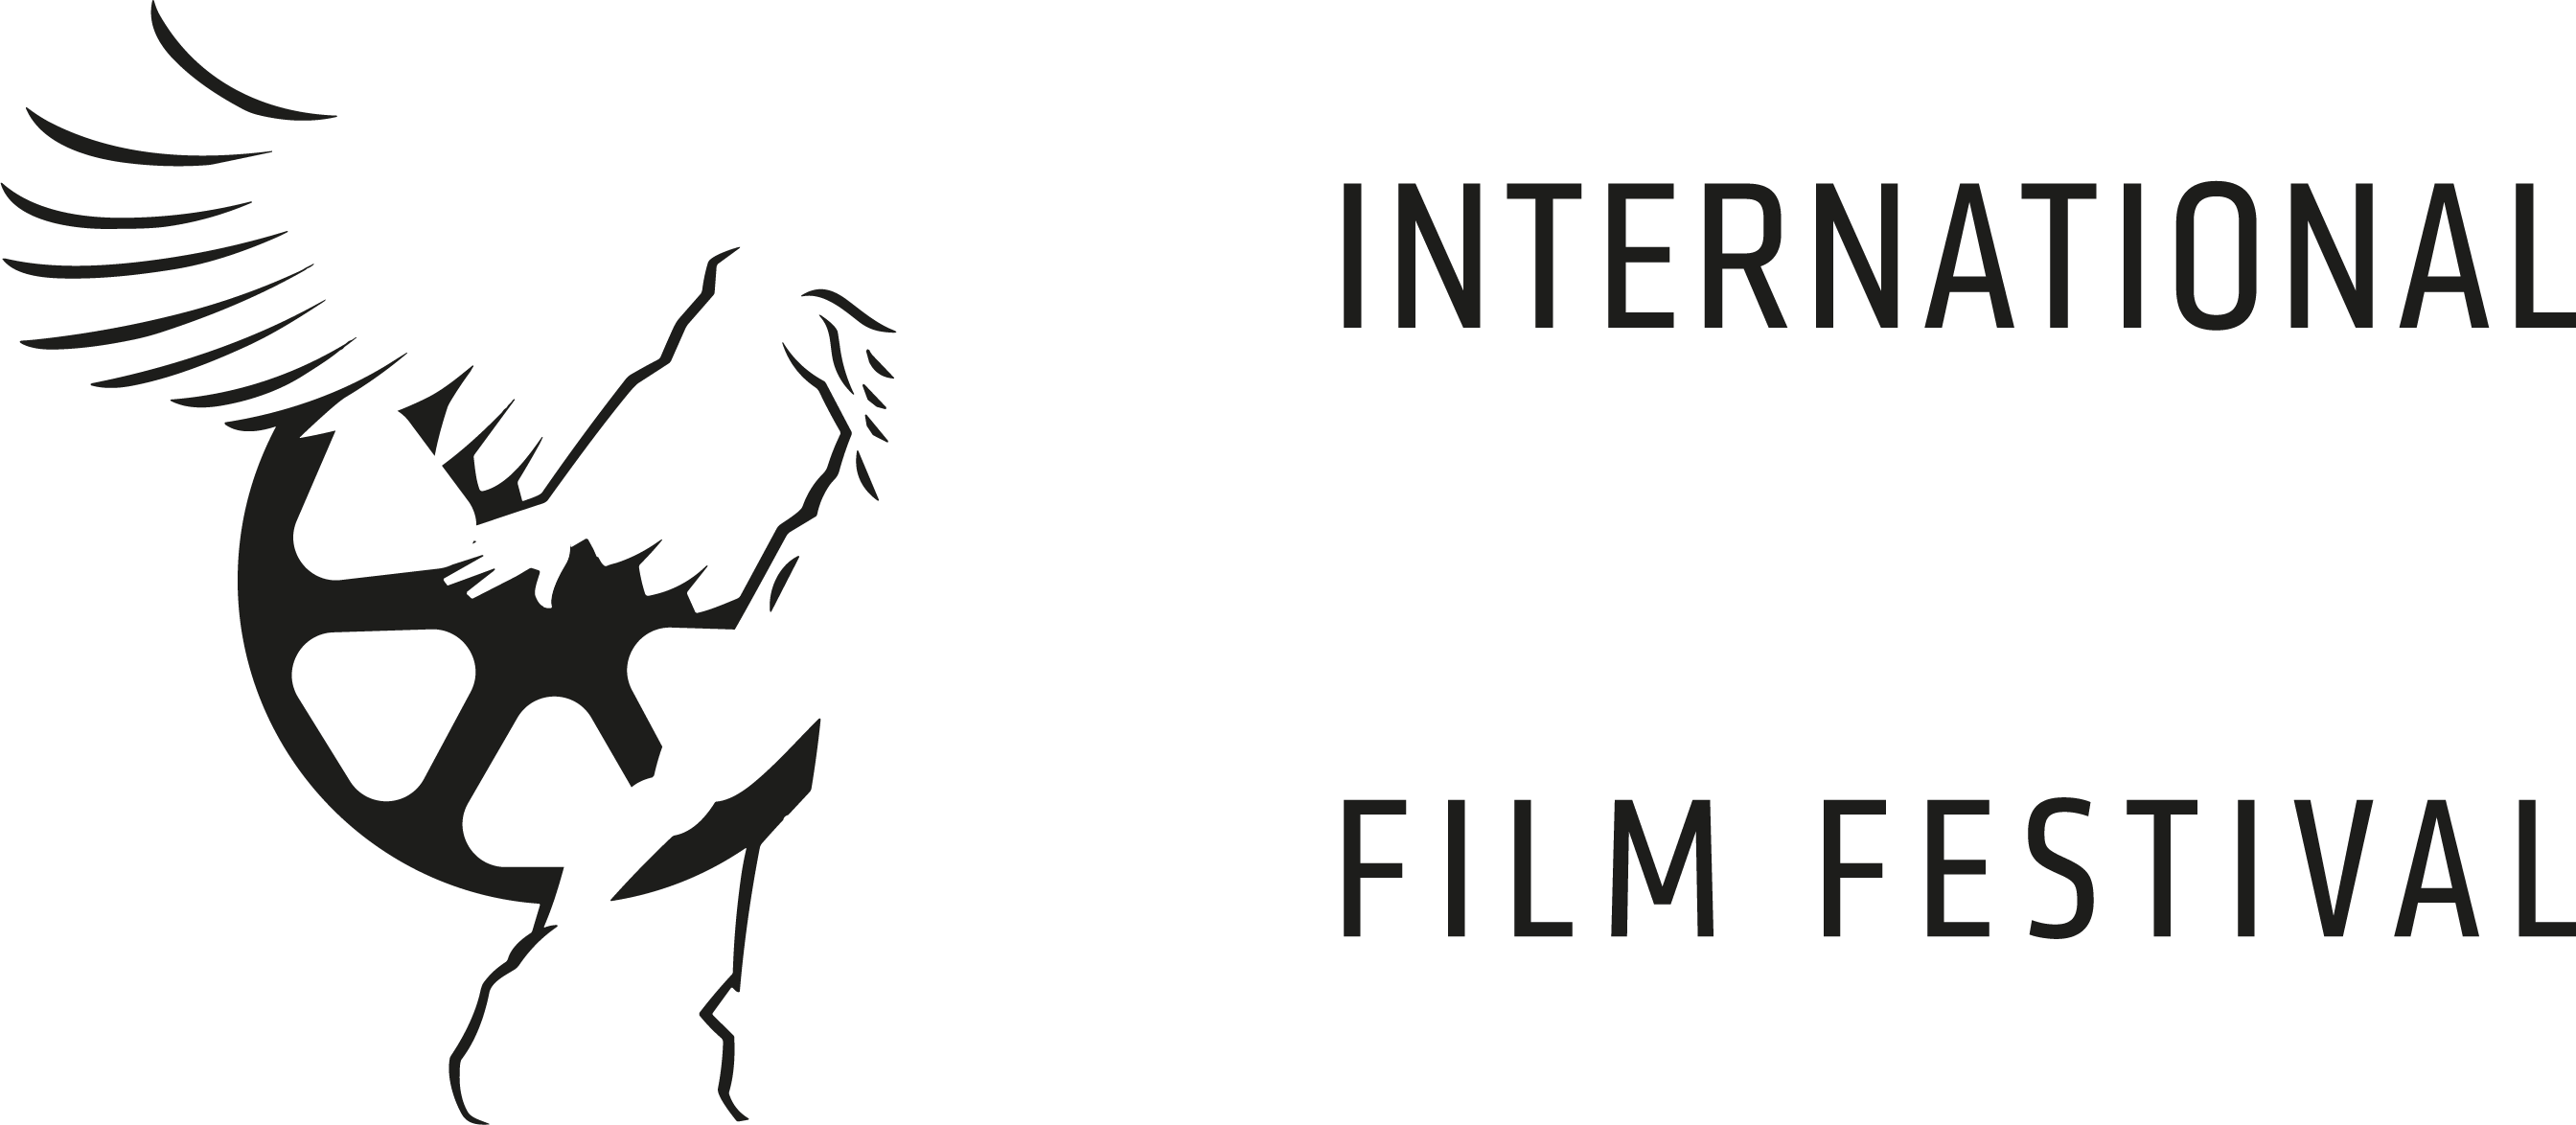 INTERNATIONAL IMAGO FILM FESTIVAL